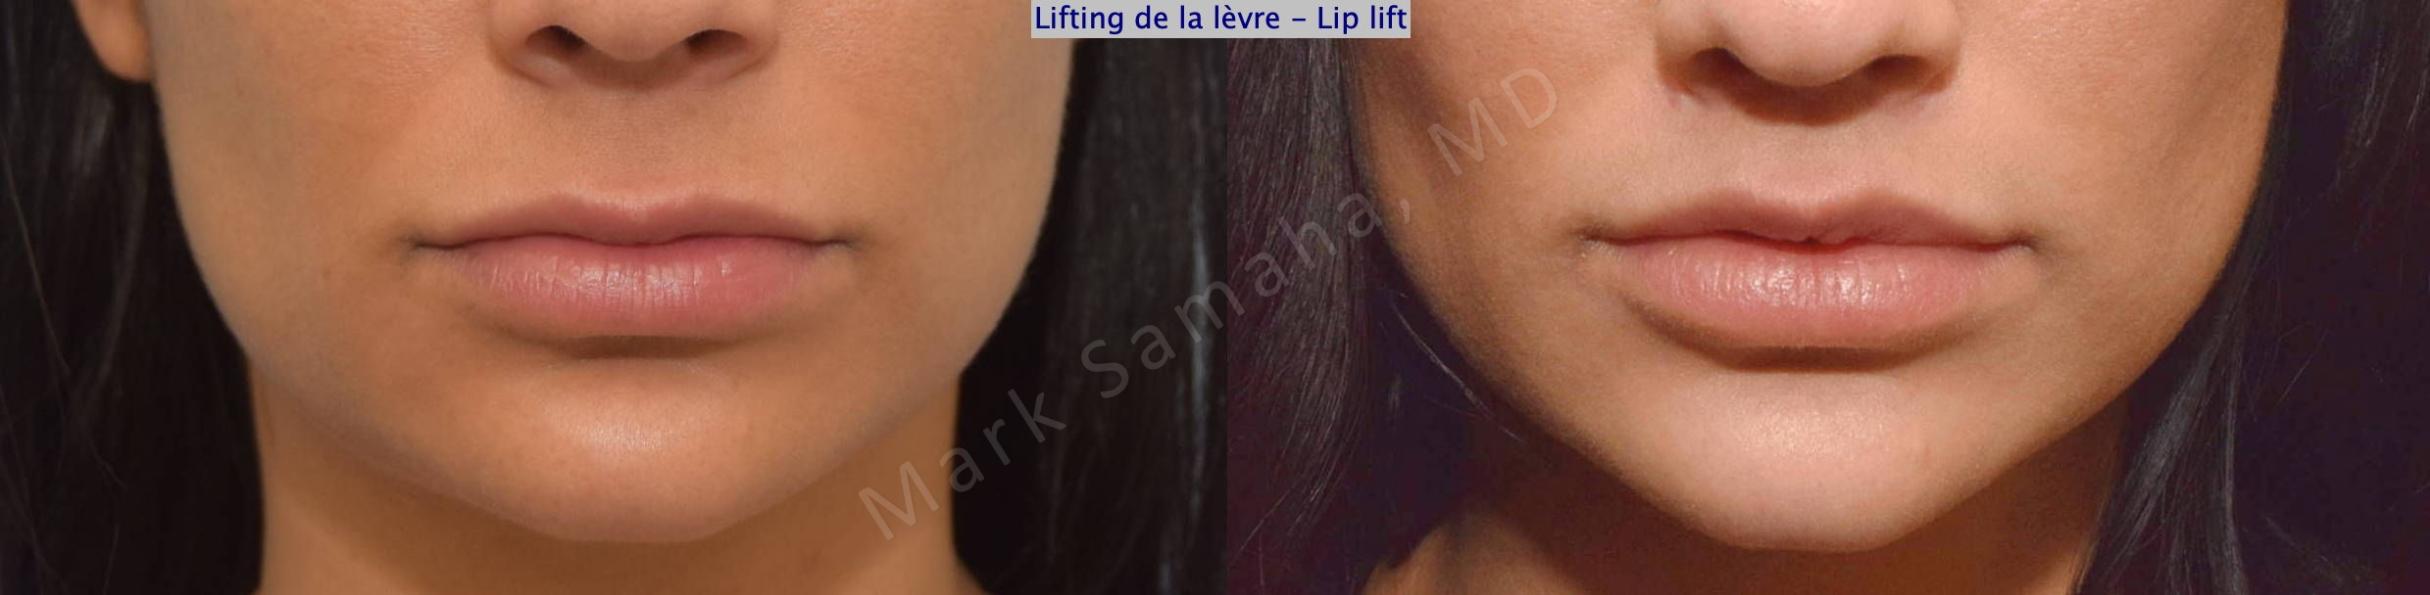 Before & After Lip Lift / Lifting de la lèvre supérieure Case 172 Front View in Mount Royal, QC